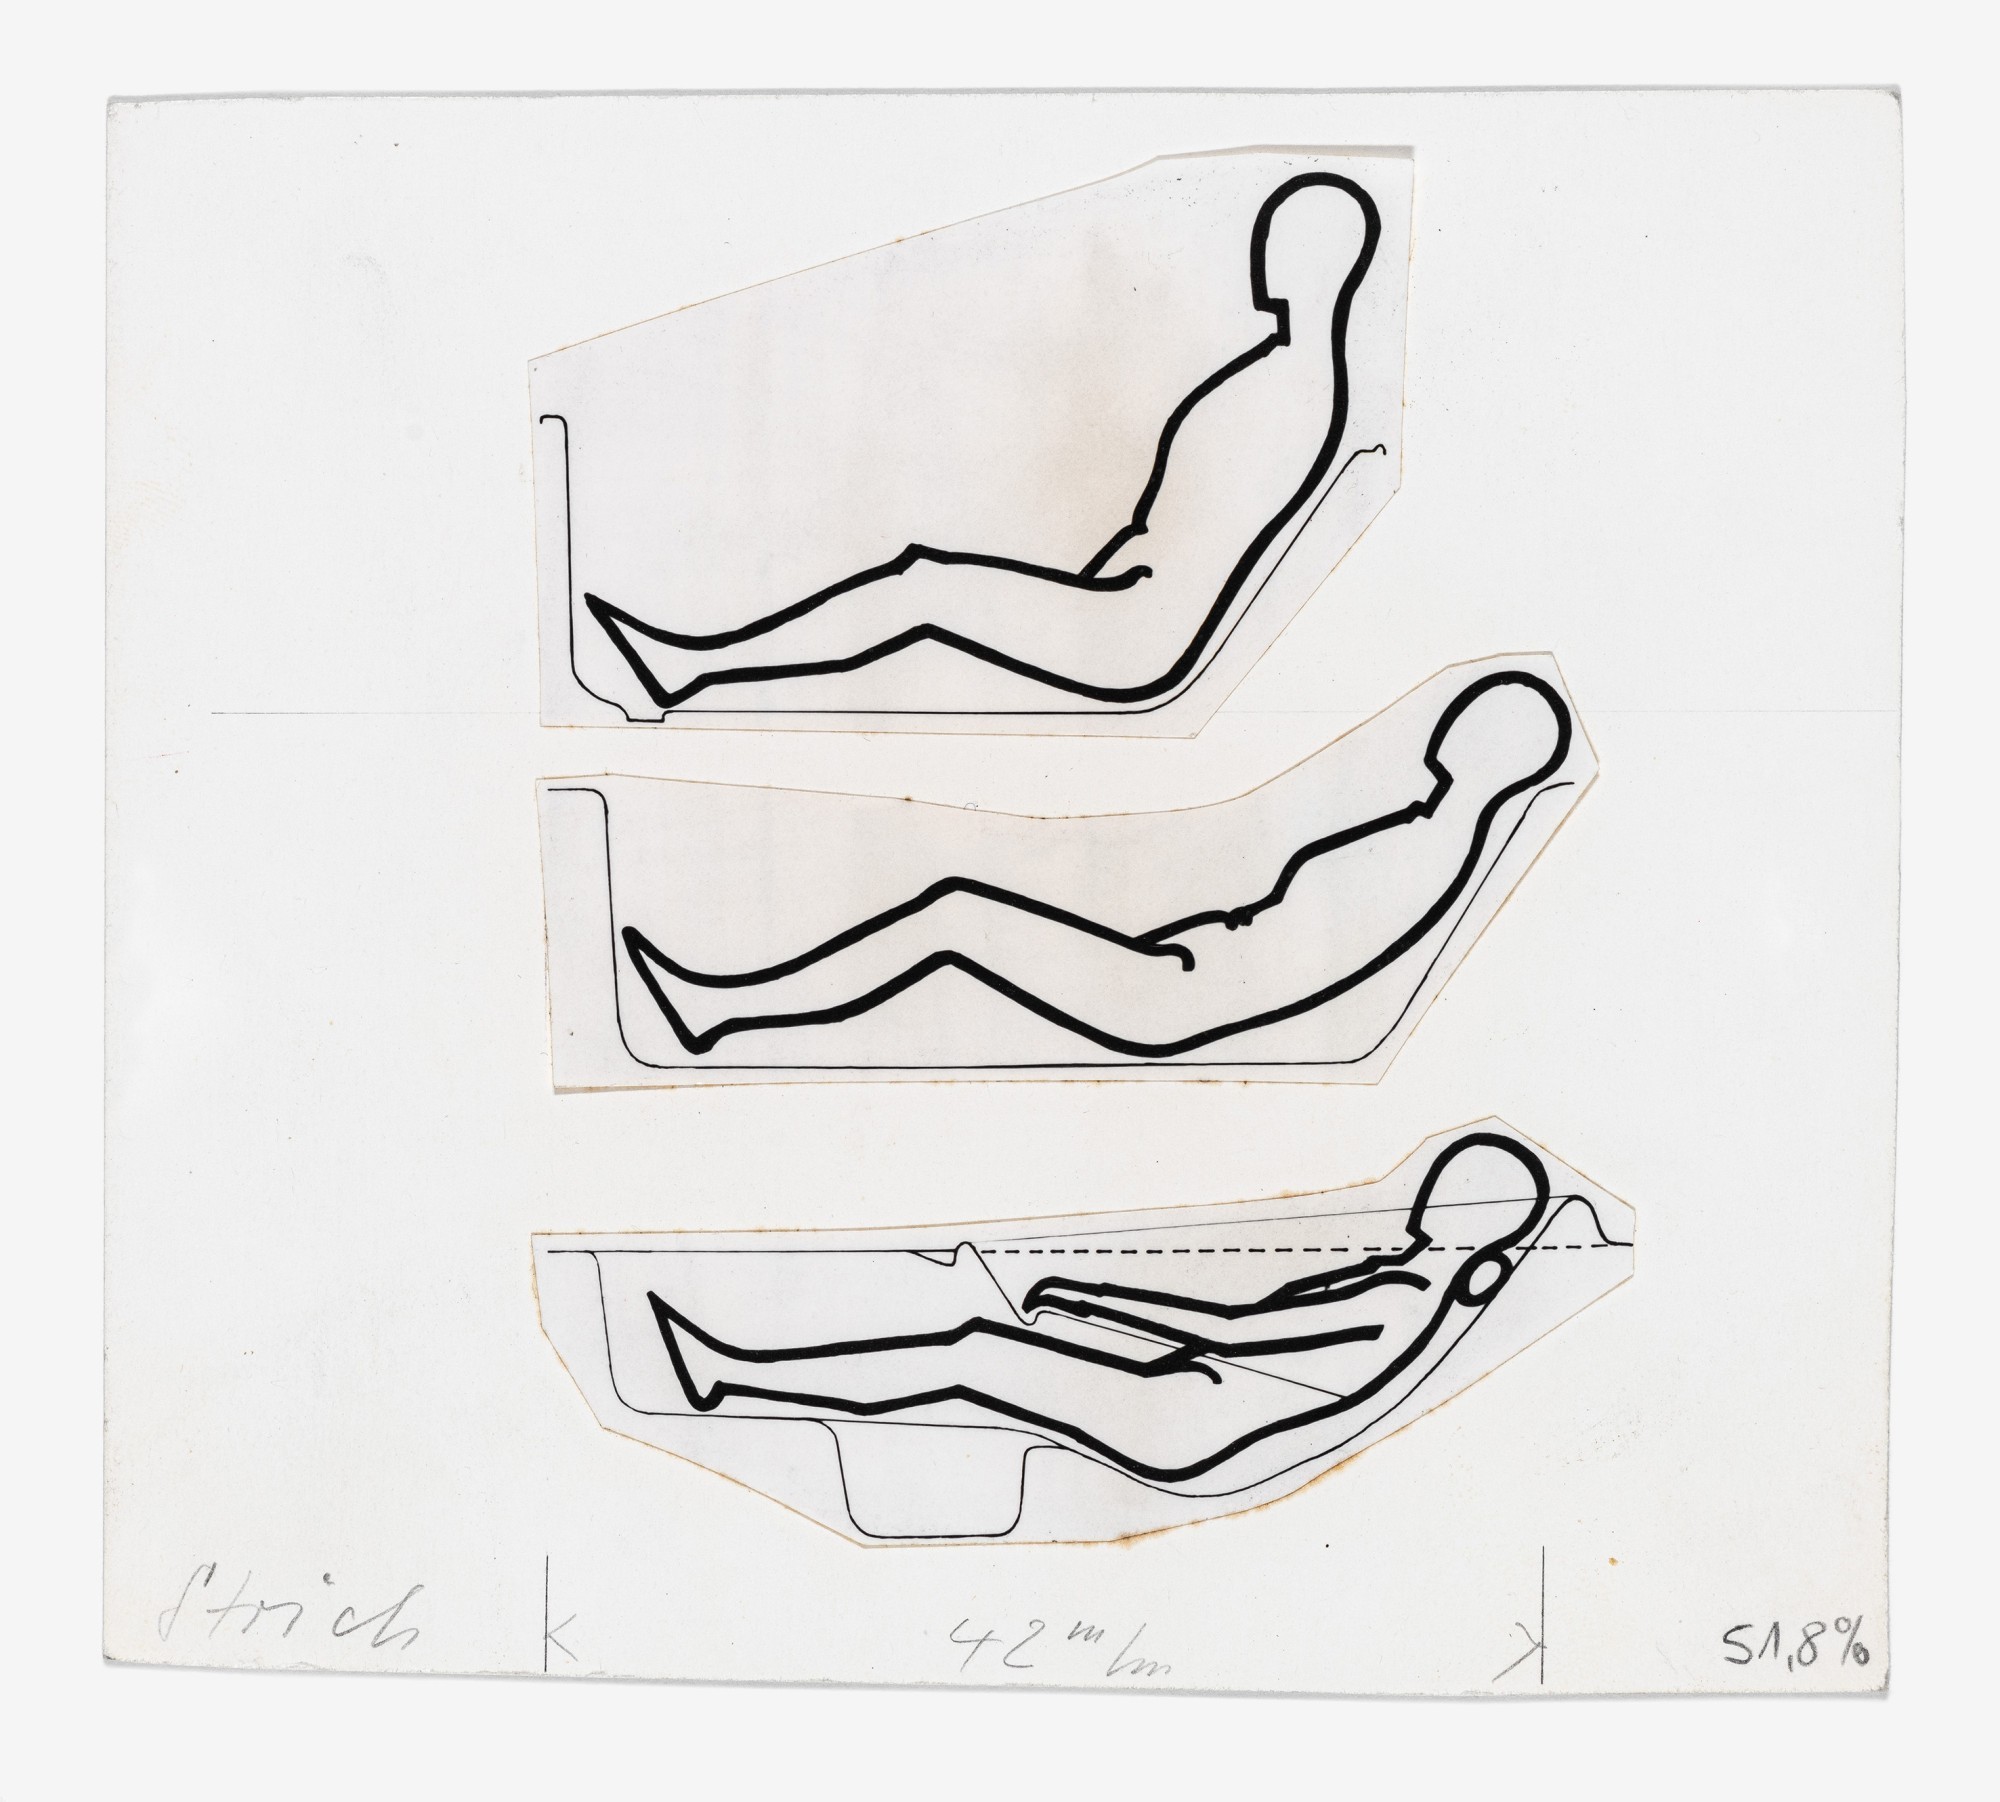 Willy Guhls Kreislaufwanne im Vergleich zu herkömmlichen Badewannen, 1956, Designsammlung, Museum für Gestaltung Zürich, Illustration: Willy Bärtschi